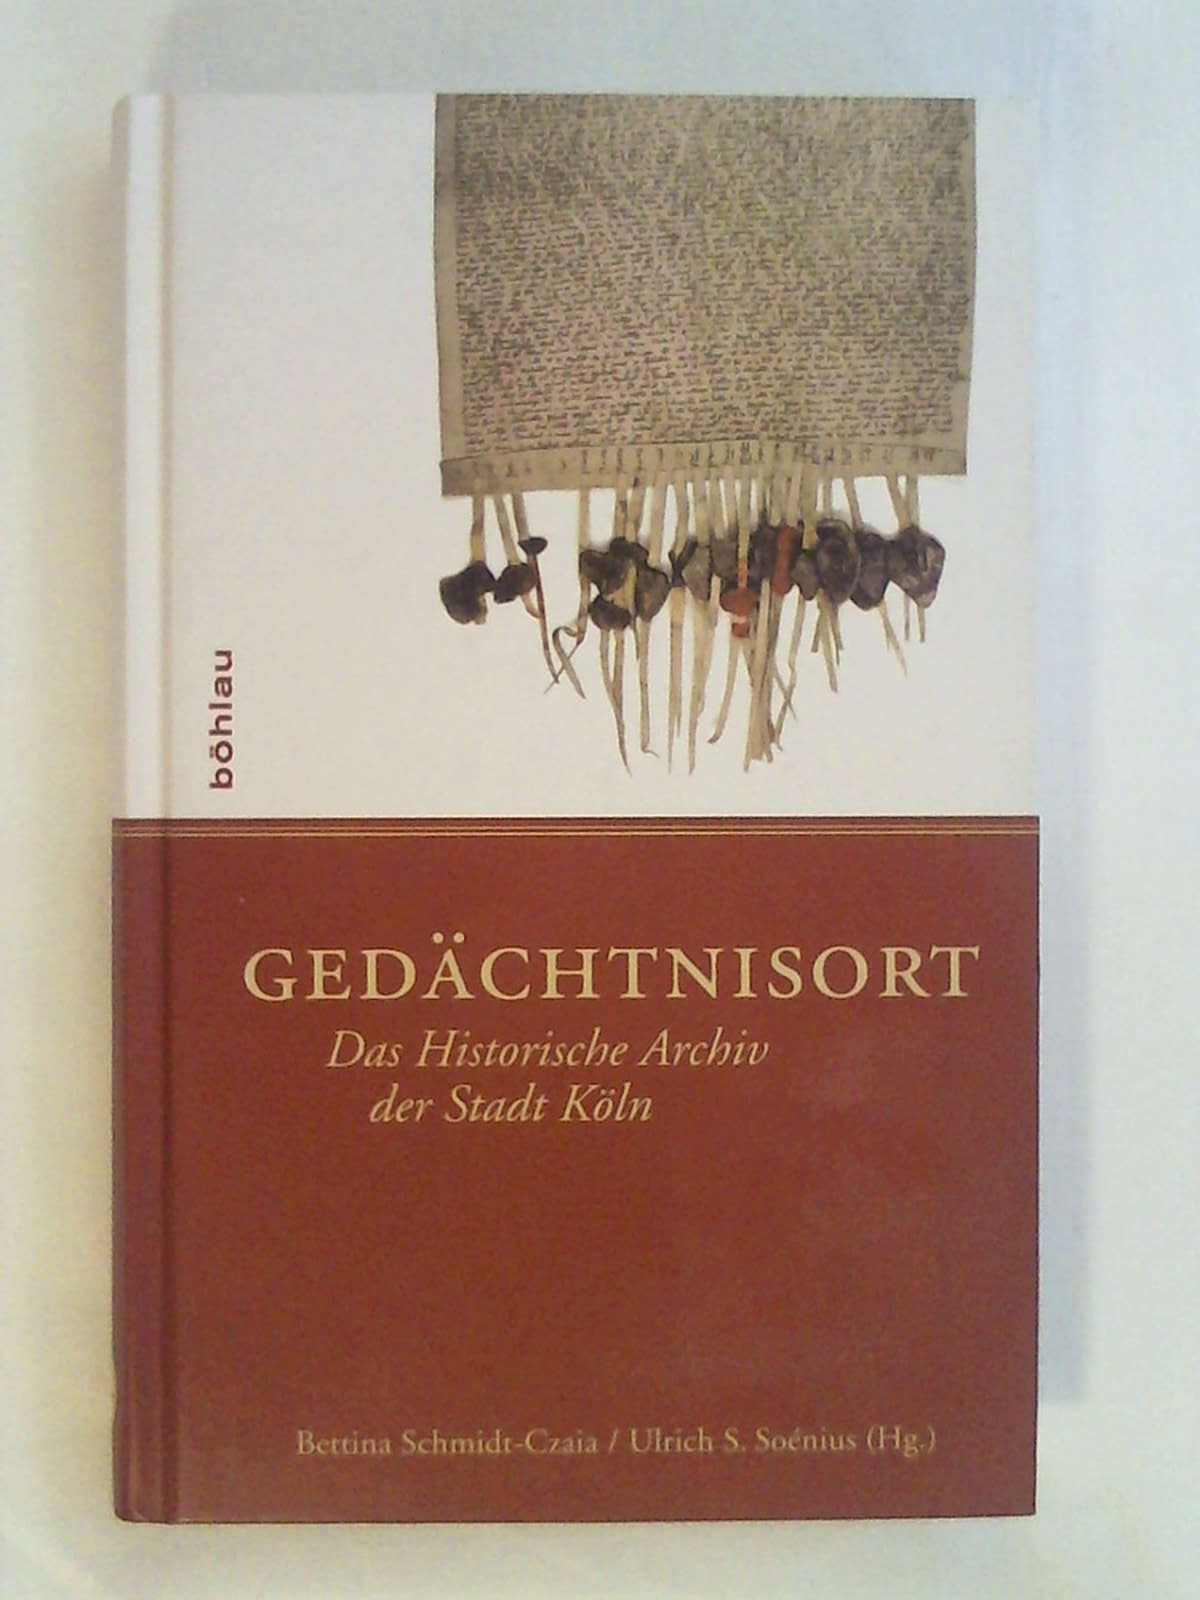 Gedächtnisort: Das Historische Archiv der Stadt Köln.